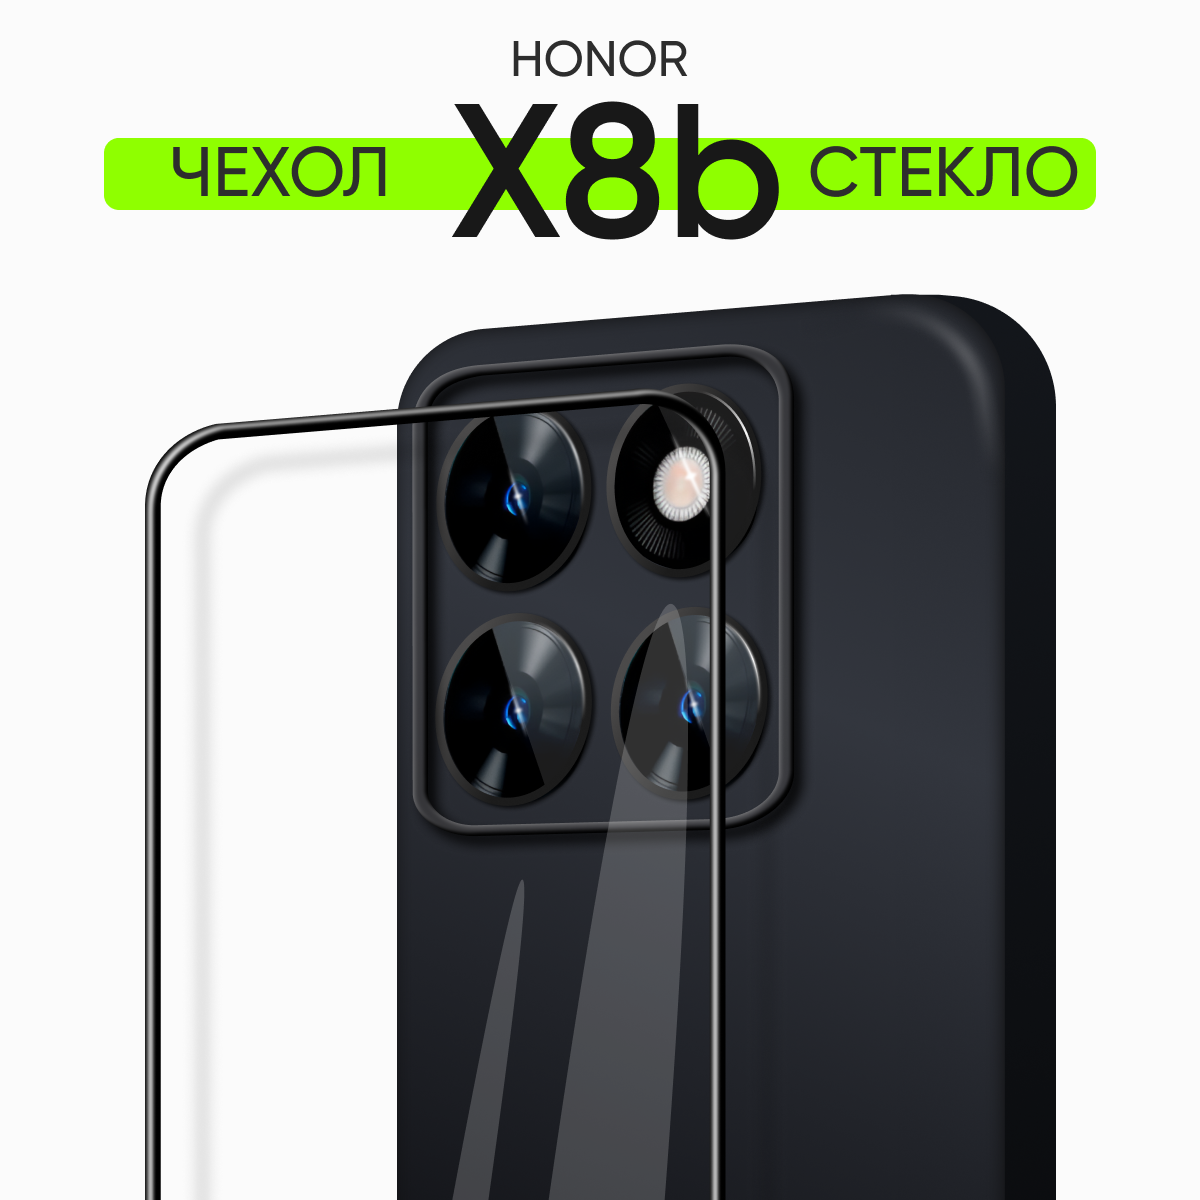 Комплект 2 в 1: Чехол №80 + стекло для Honor x8b / противоударный силиконовый черный матовый клип-кейс с защитой камеры на Хонор Икс 8б